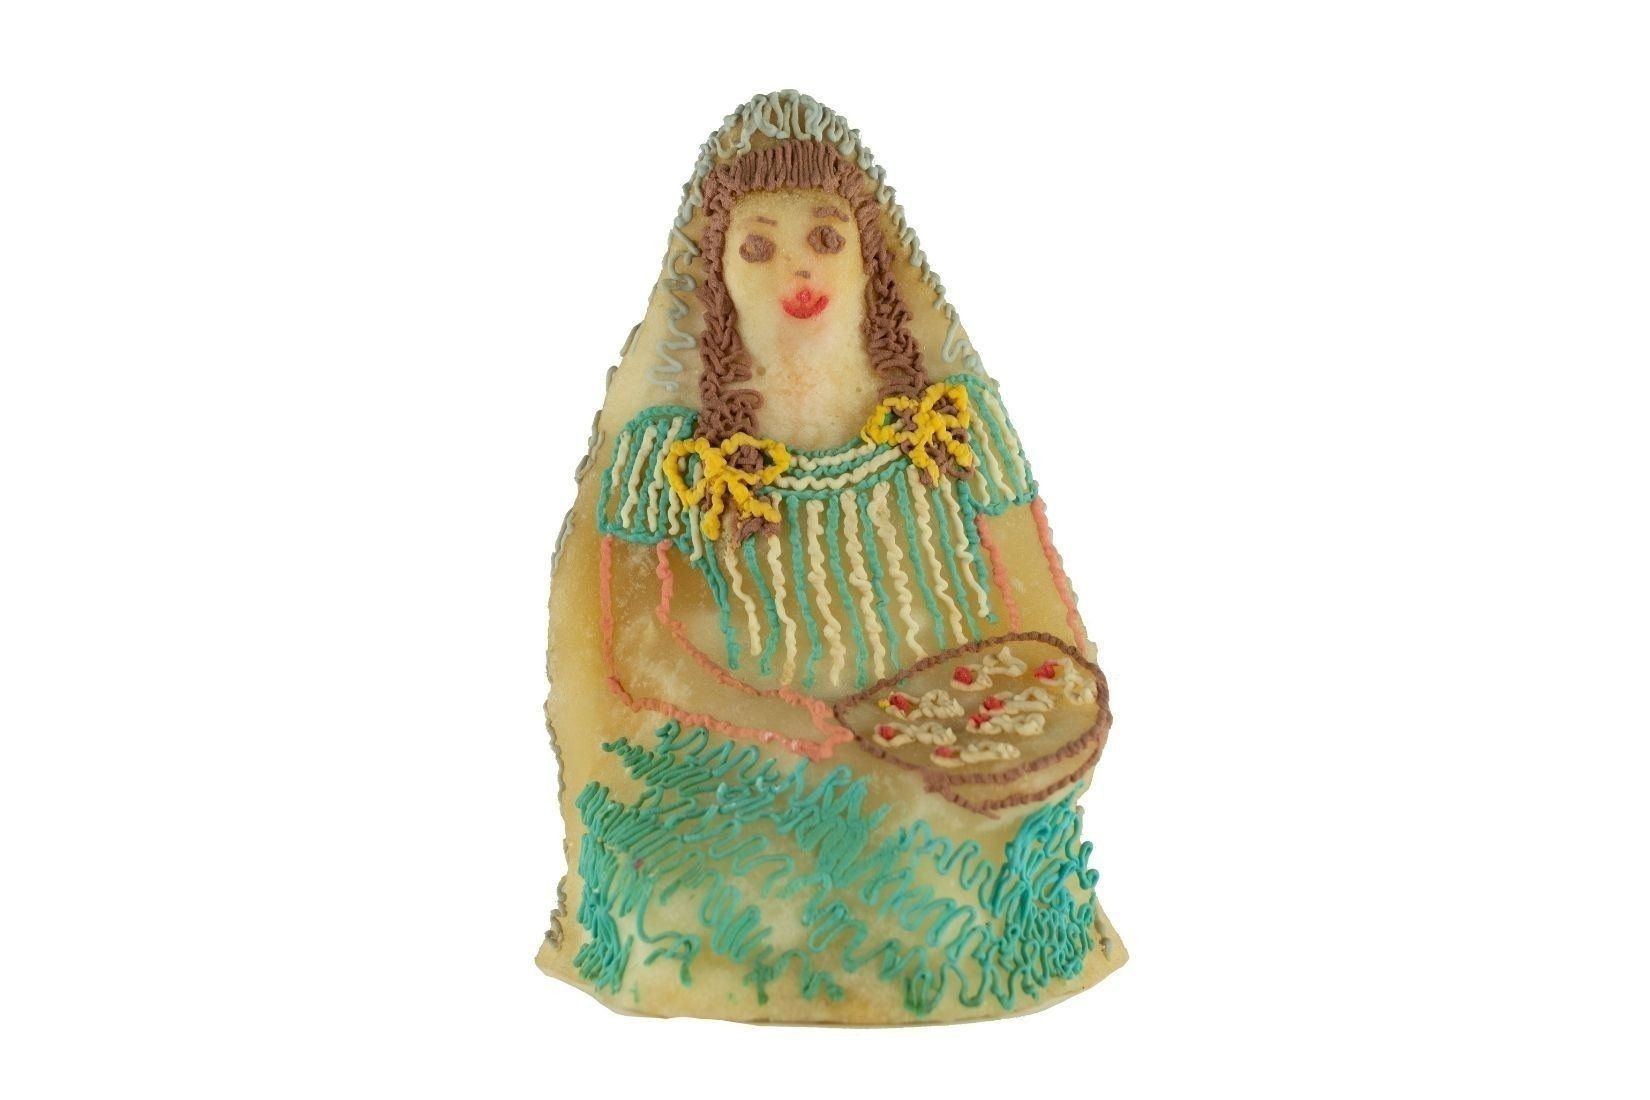 Mujer mazahua de alfeñique (azúcar modelada y pintura vegetal). Artesano desconocido. Guanajuato. Col. María Teresa Pomar. (Foto: Estudio Kristina Velfu, EKV).